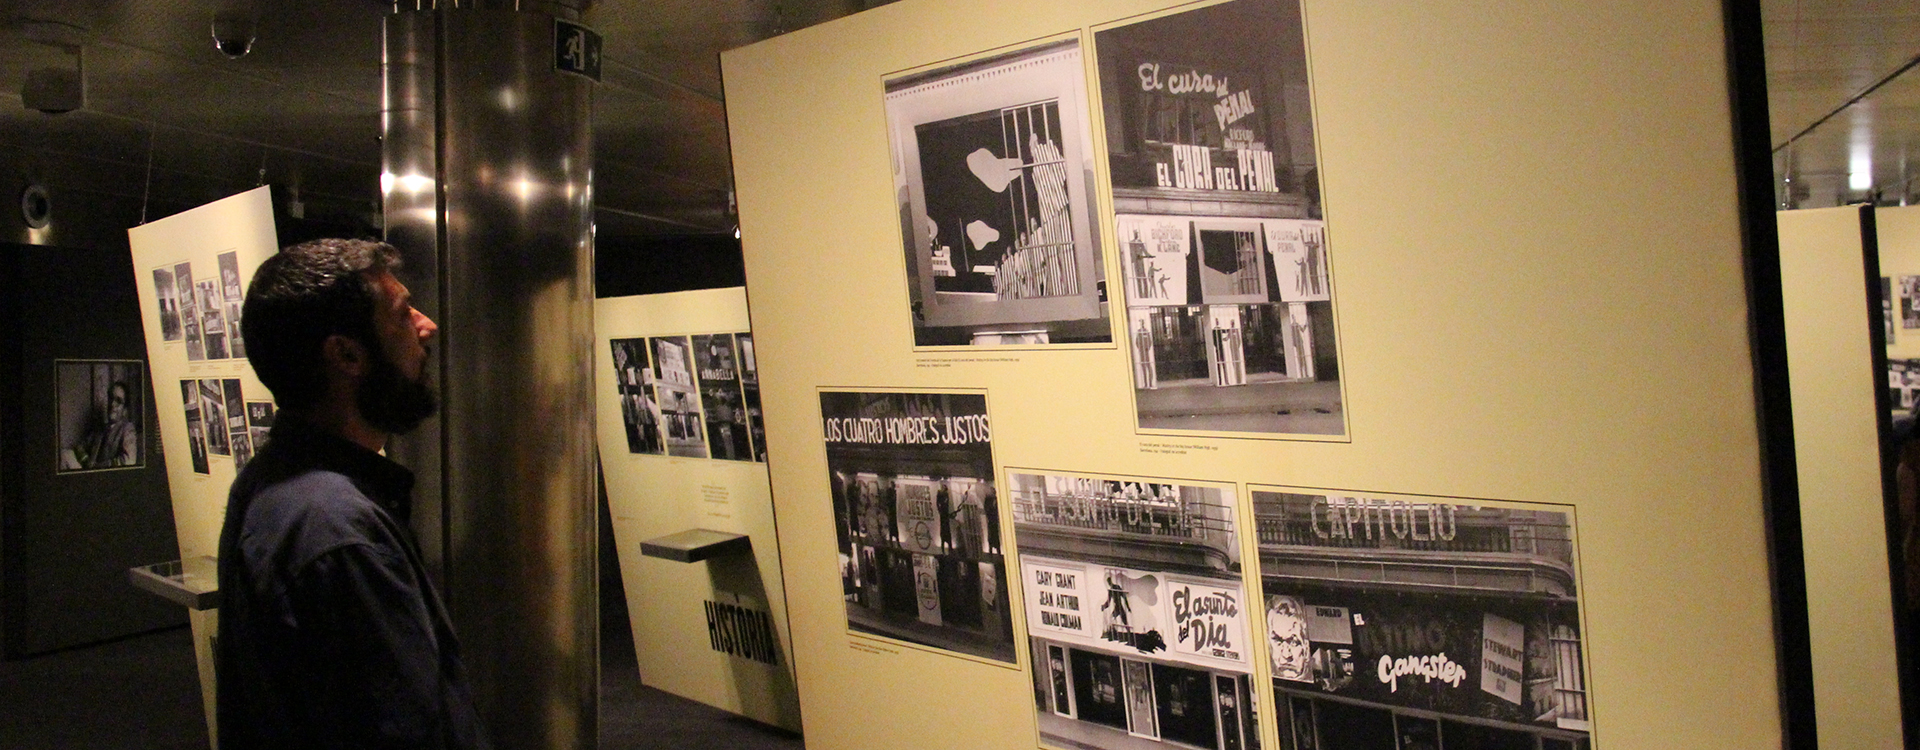 Exposición “Las fachadas de Can Pistoles. (Cine Capitol, 1926-1989)”